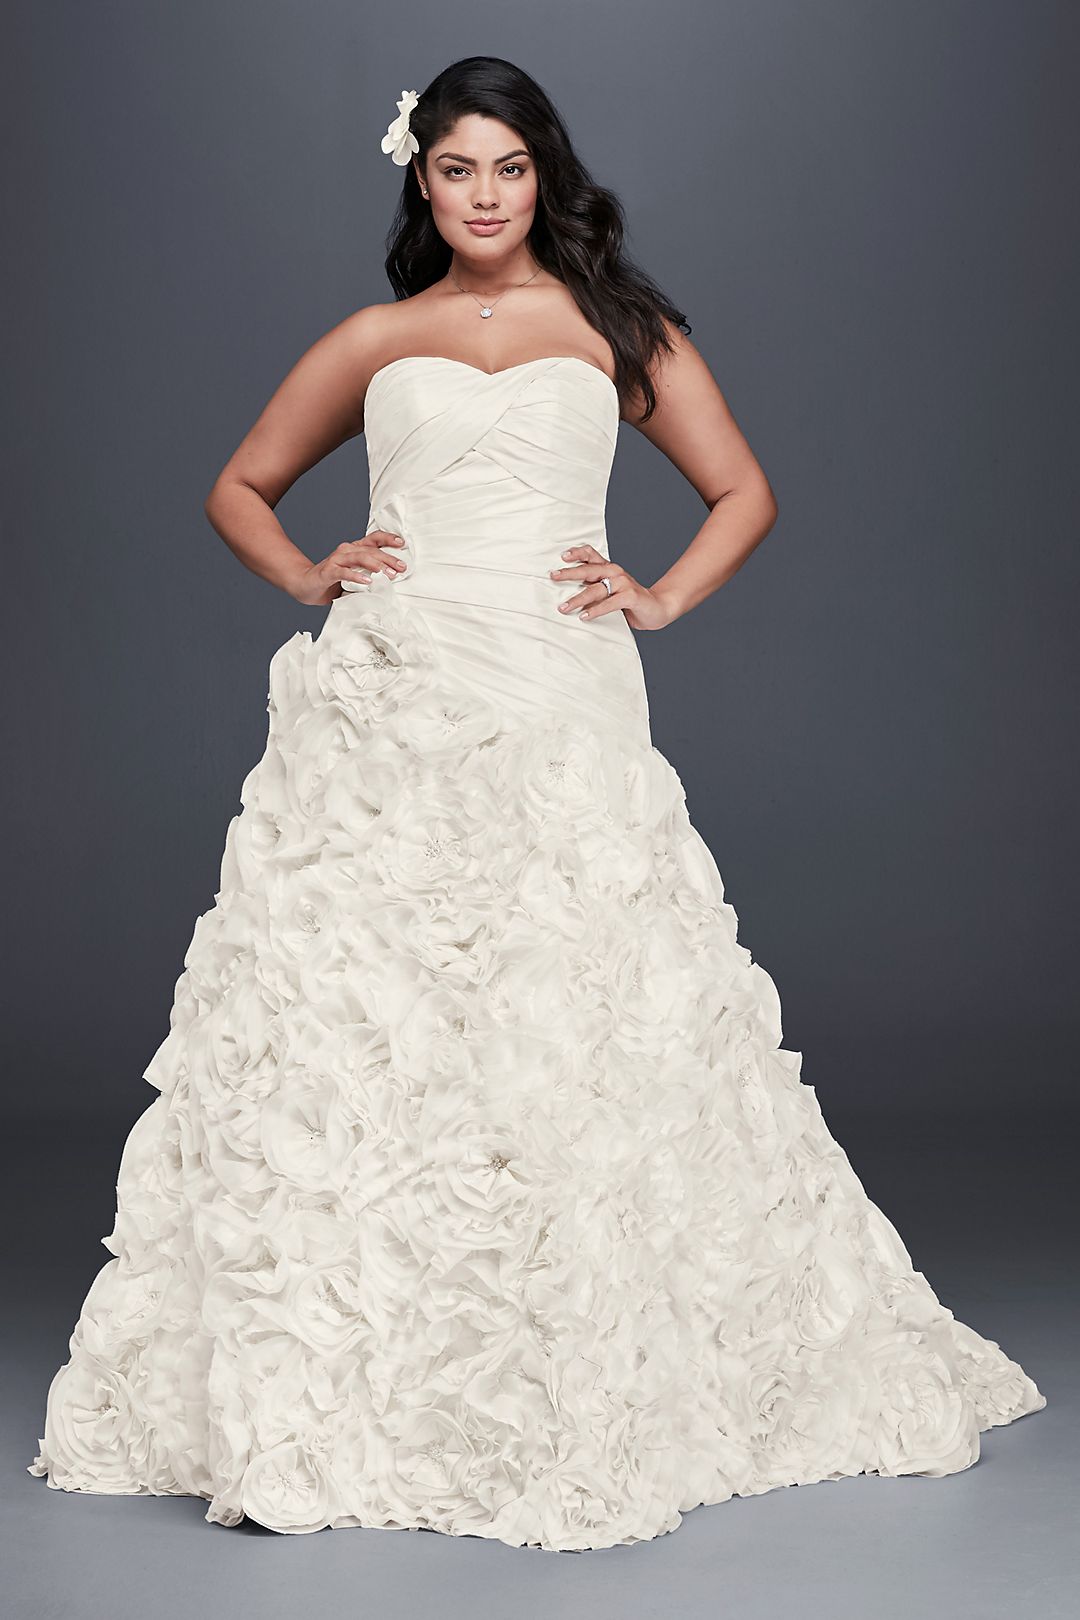 Rosette Skirt Wedding Dress Image 1